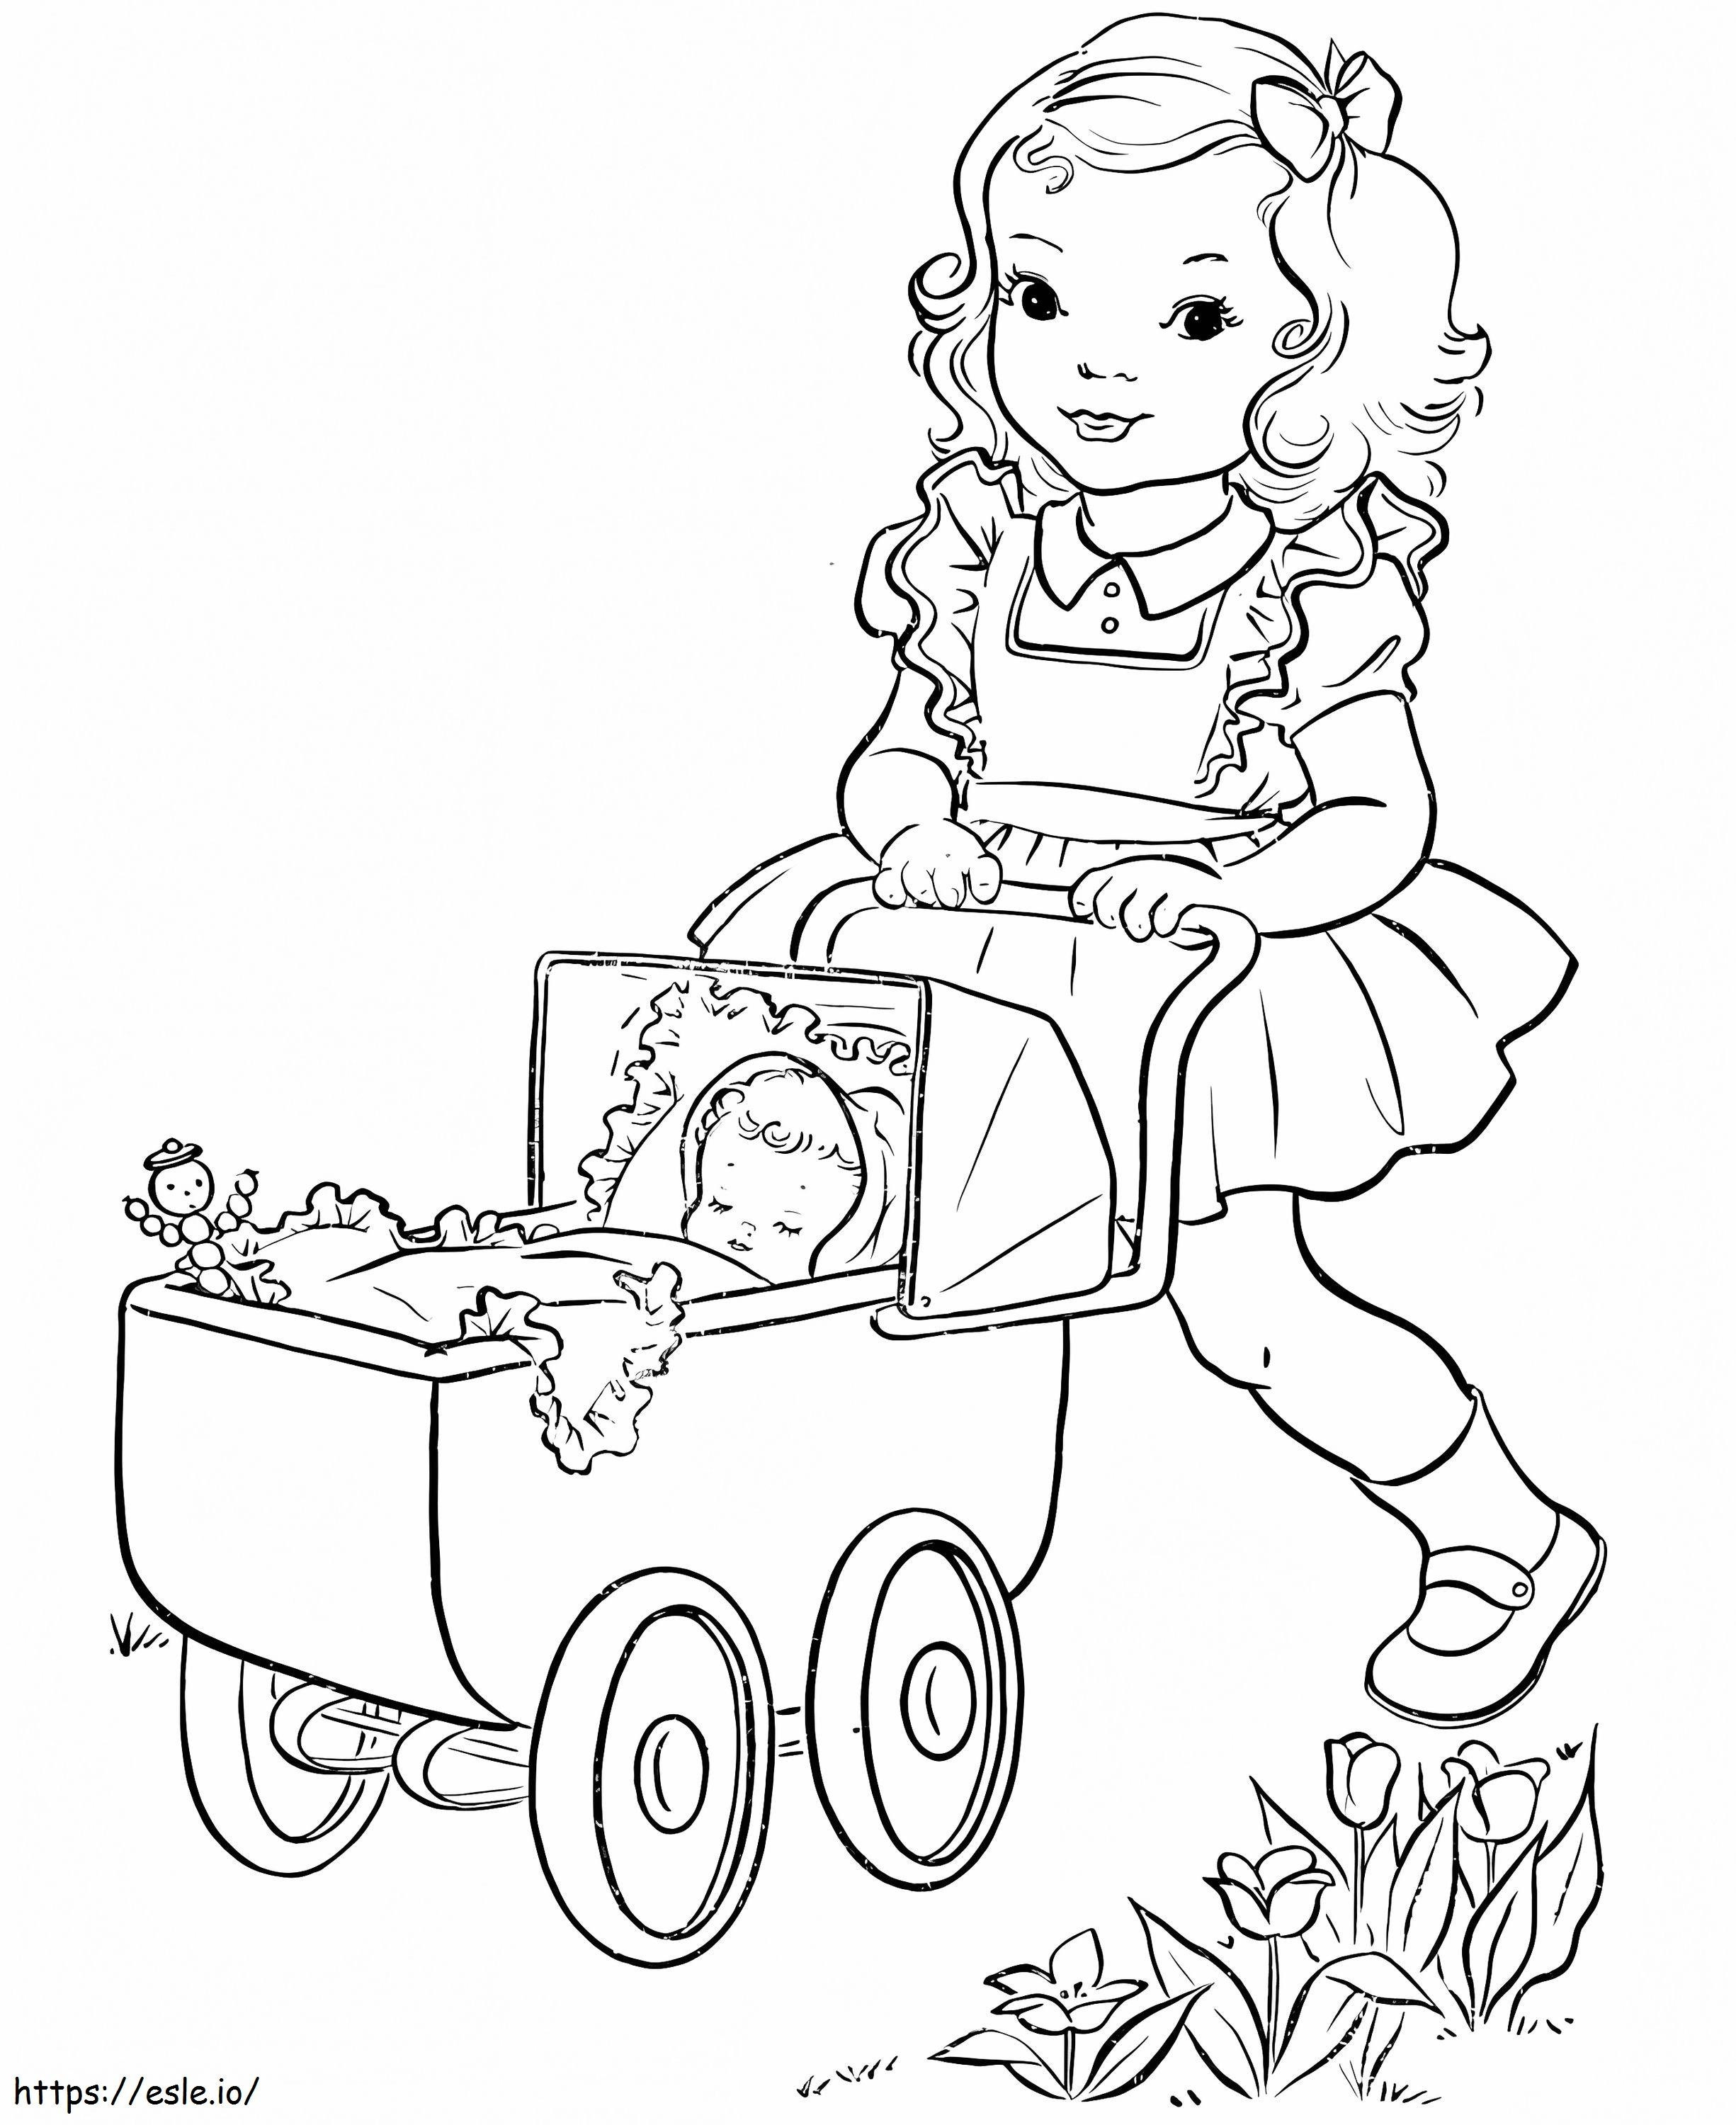 Kolorowanka z dzieckiem w wózku kolorowanka